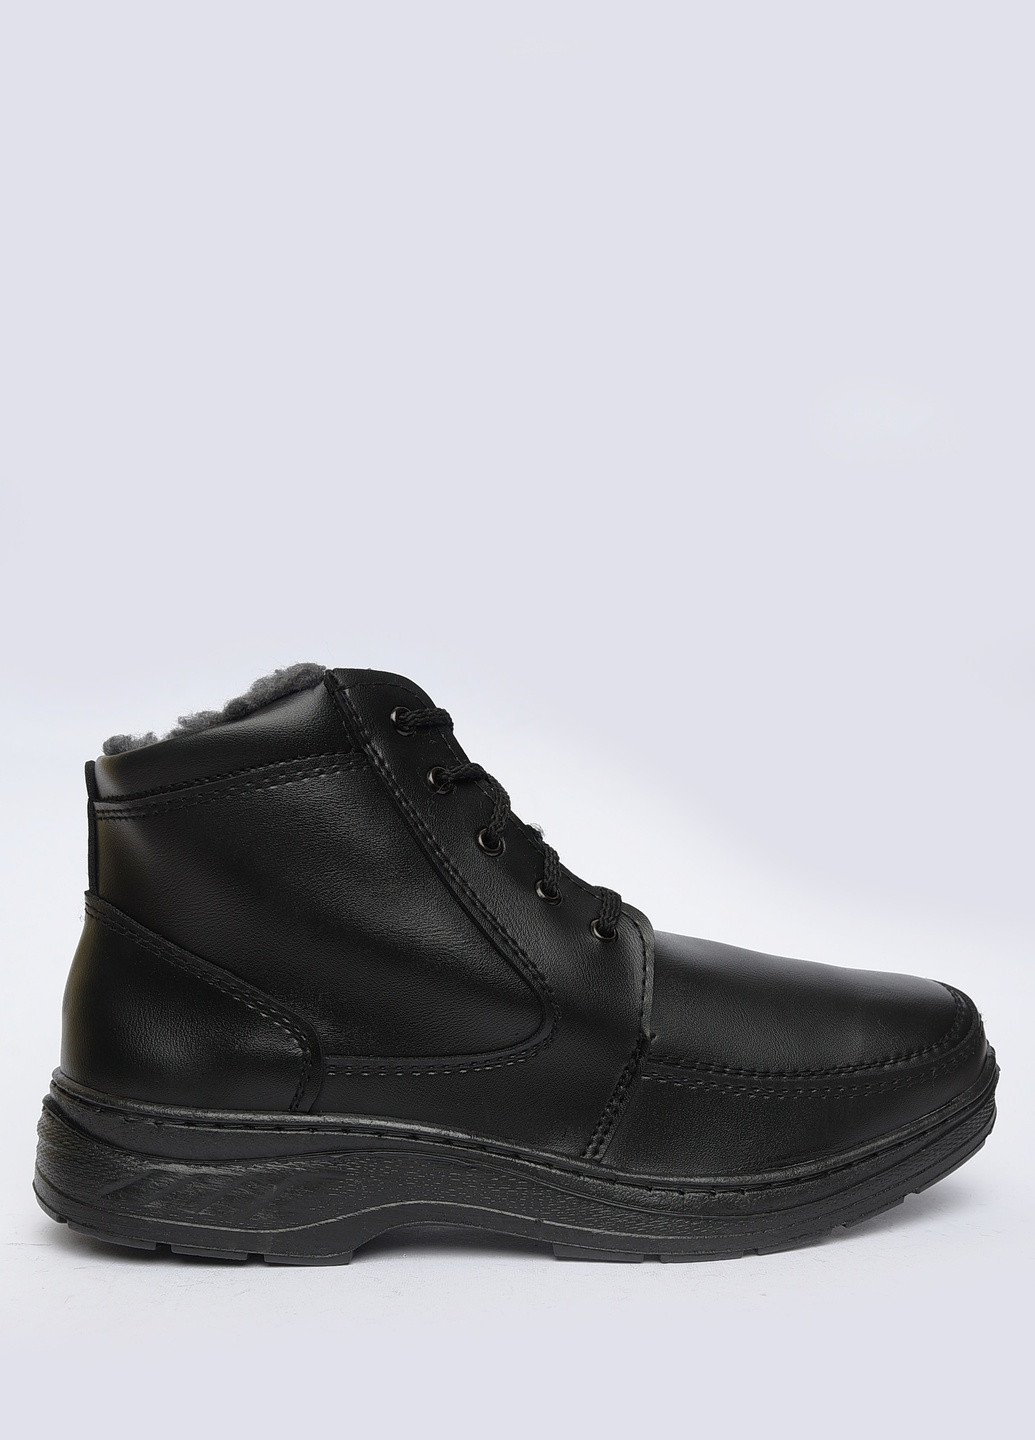 Черные зимние ботинки мужские еврозима черные Let's Shop